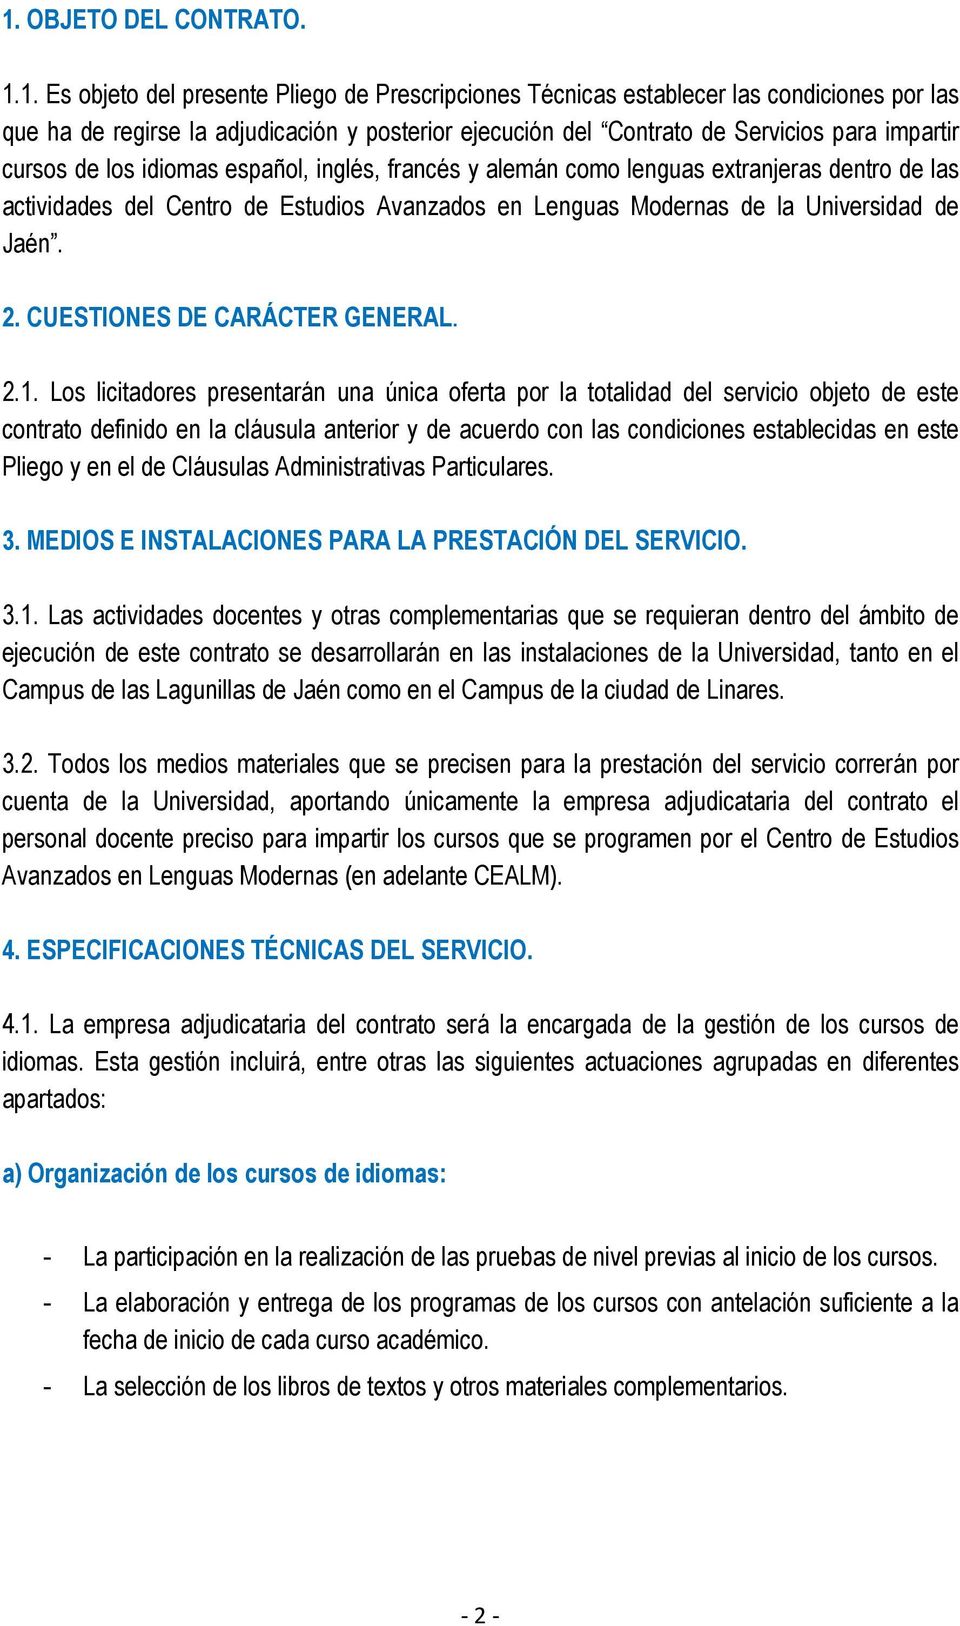 Universidad de Jaén. 2. CUESTIONES DE CARÁCTER GENERAL. 2.1.